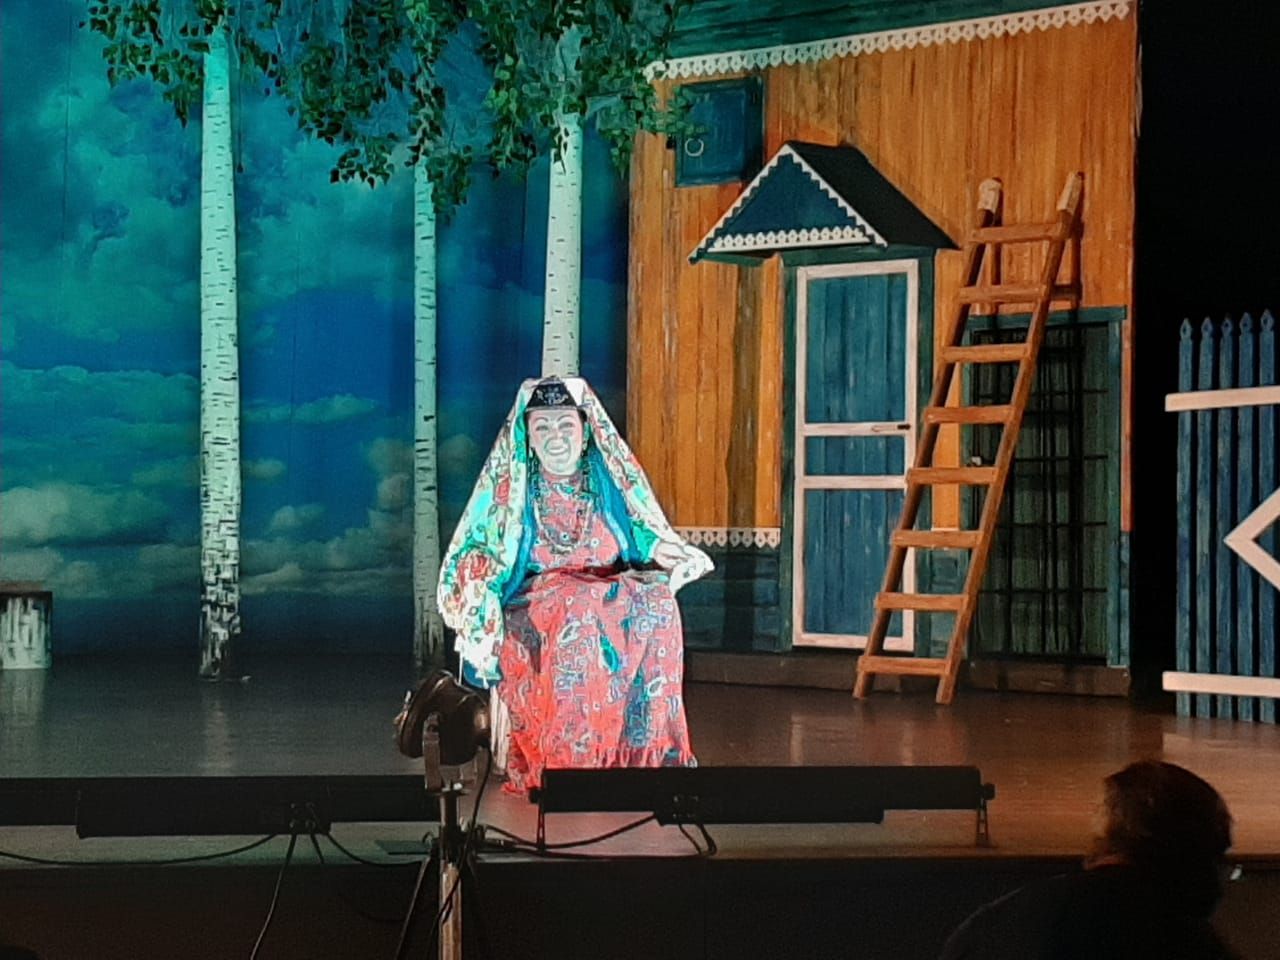 В Заинске прошел показ спектакля «Кыз урлау» («Похищение девушки») драматурга Мустая Карима